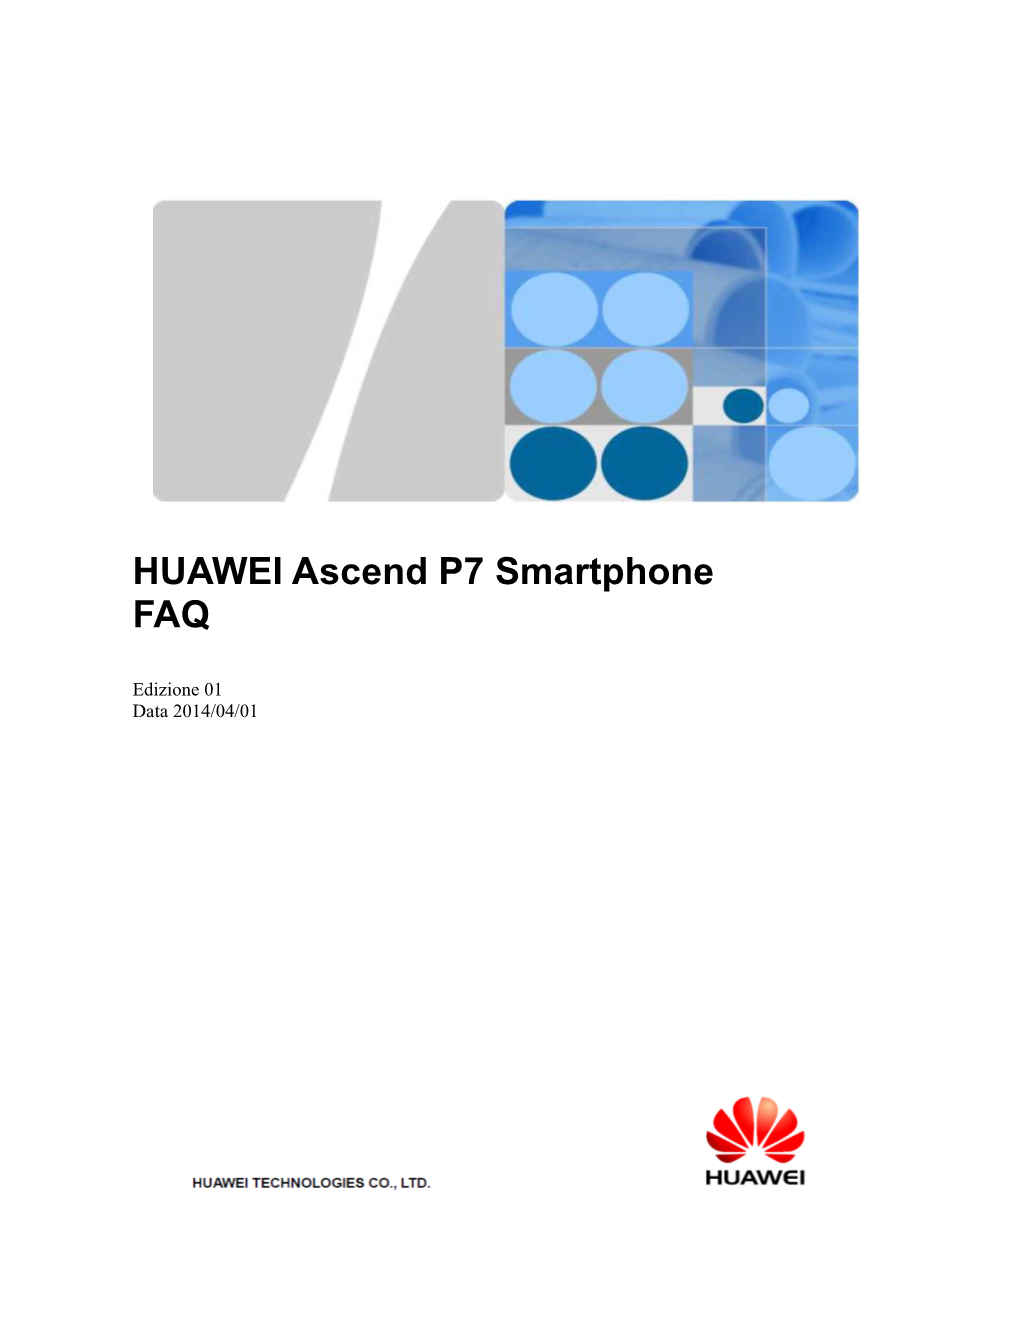 HUAWEI Ascend P7 Smartphone FAQ